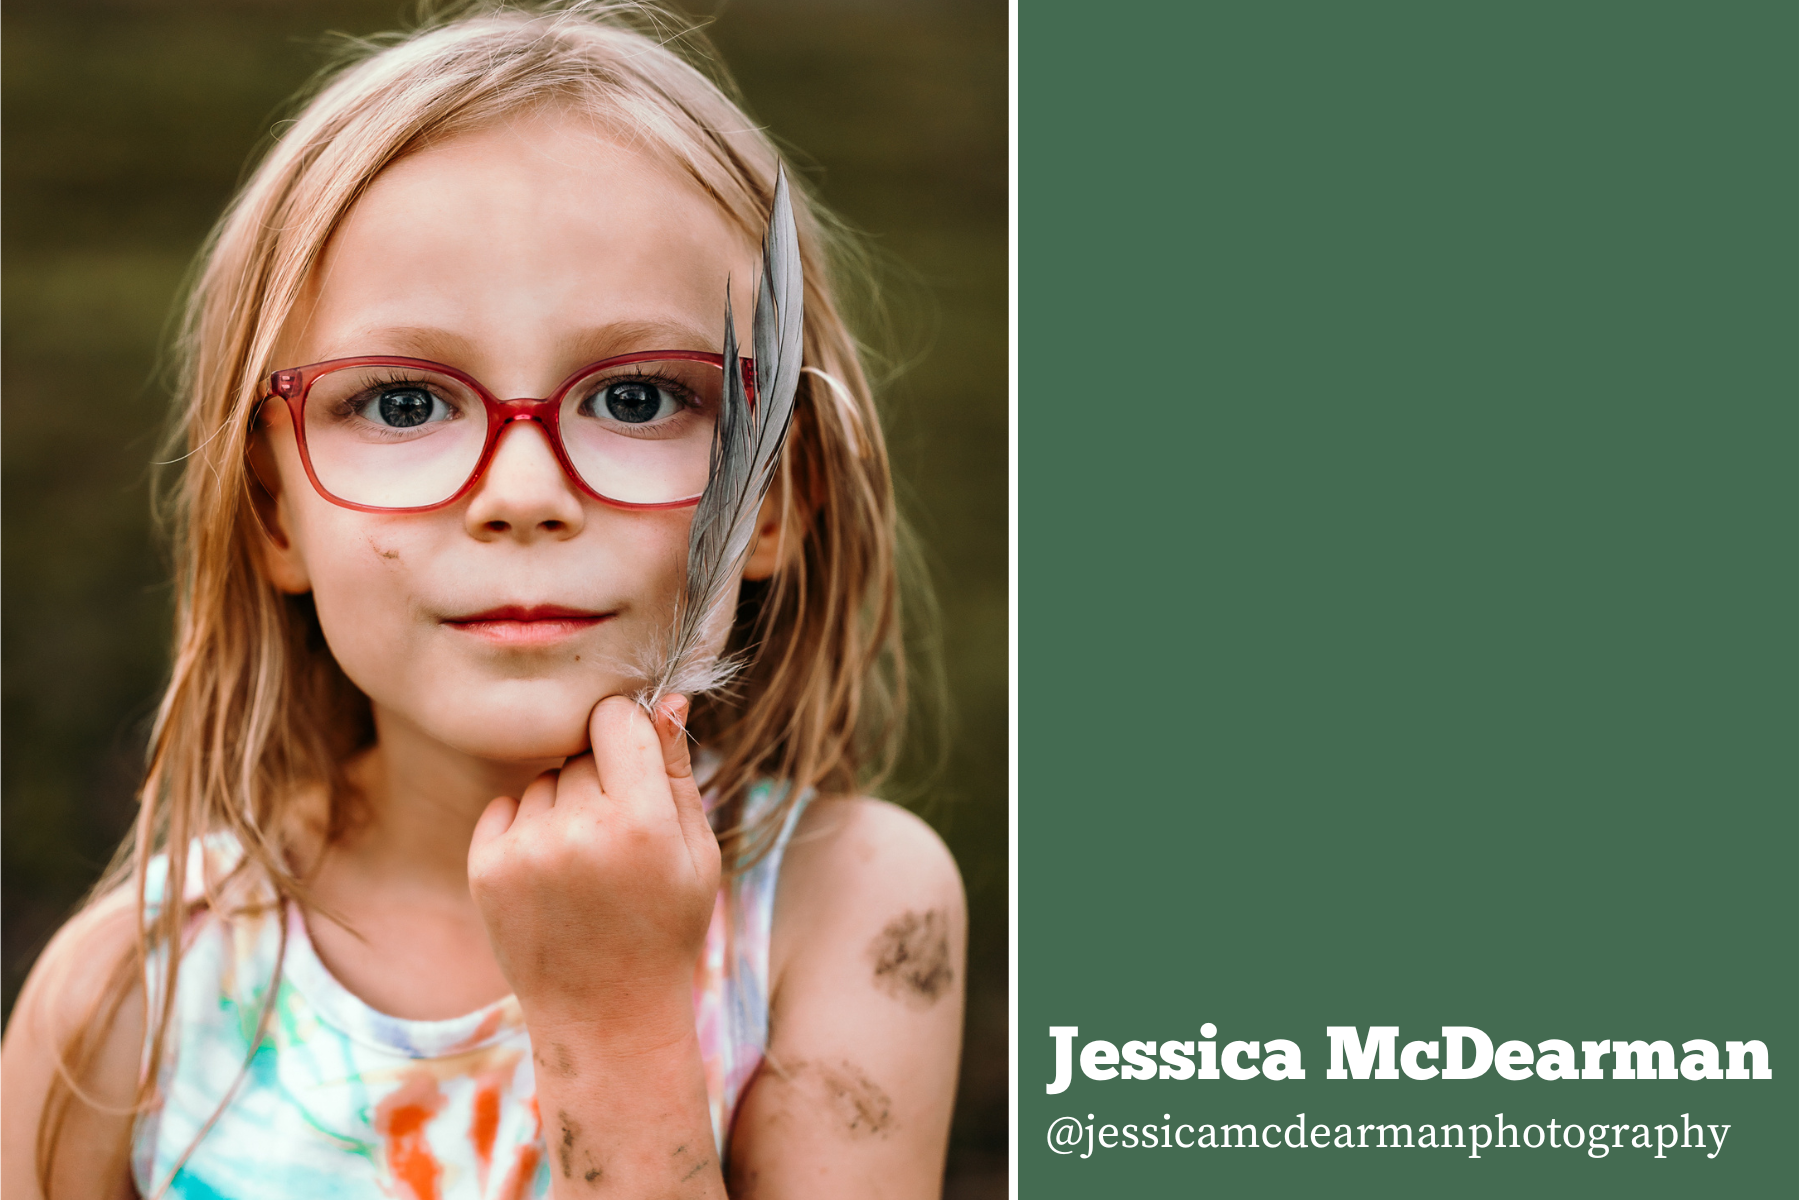 March VIP Photo Contest - Jessica McDearman